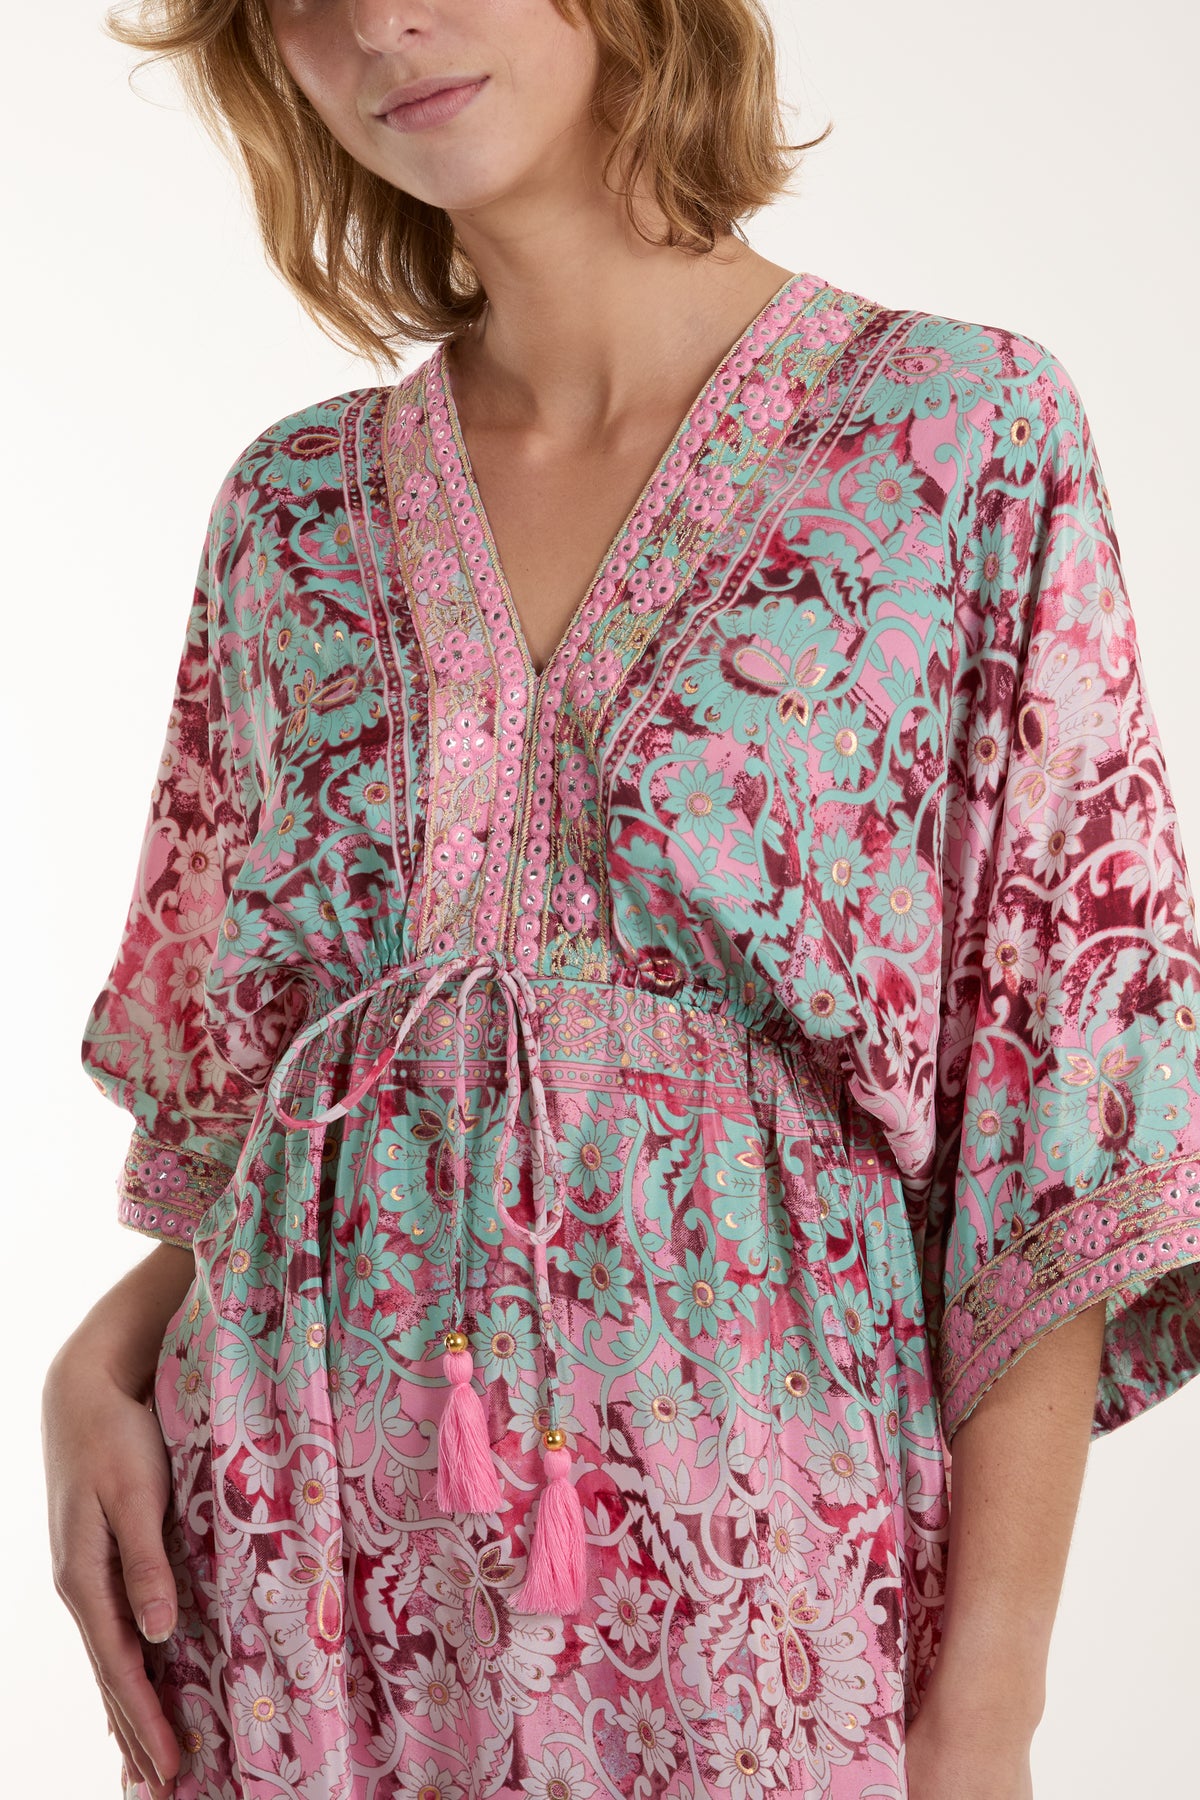 Floral Design Embellished Art Silk Kimono Dress